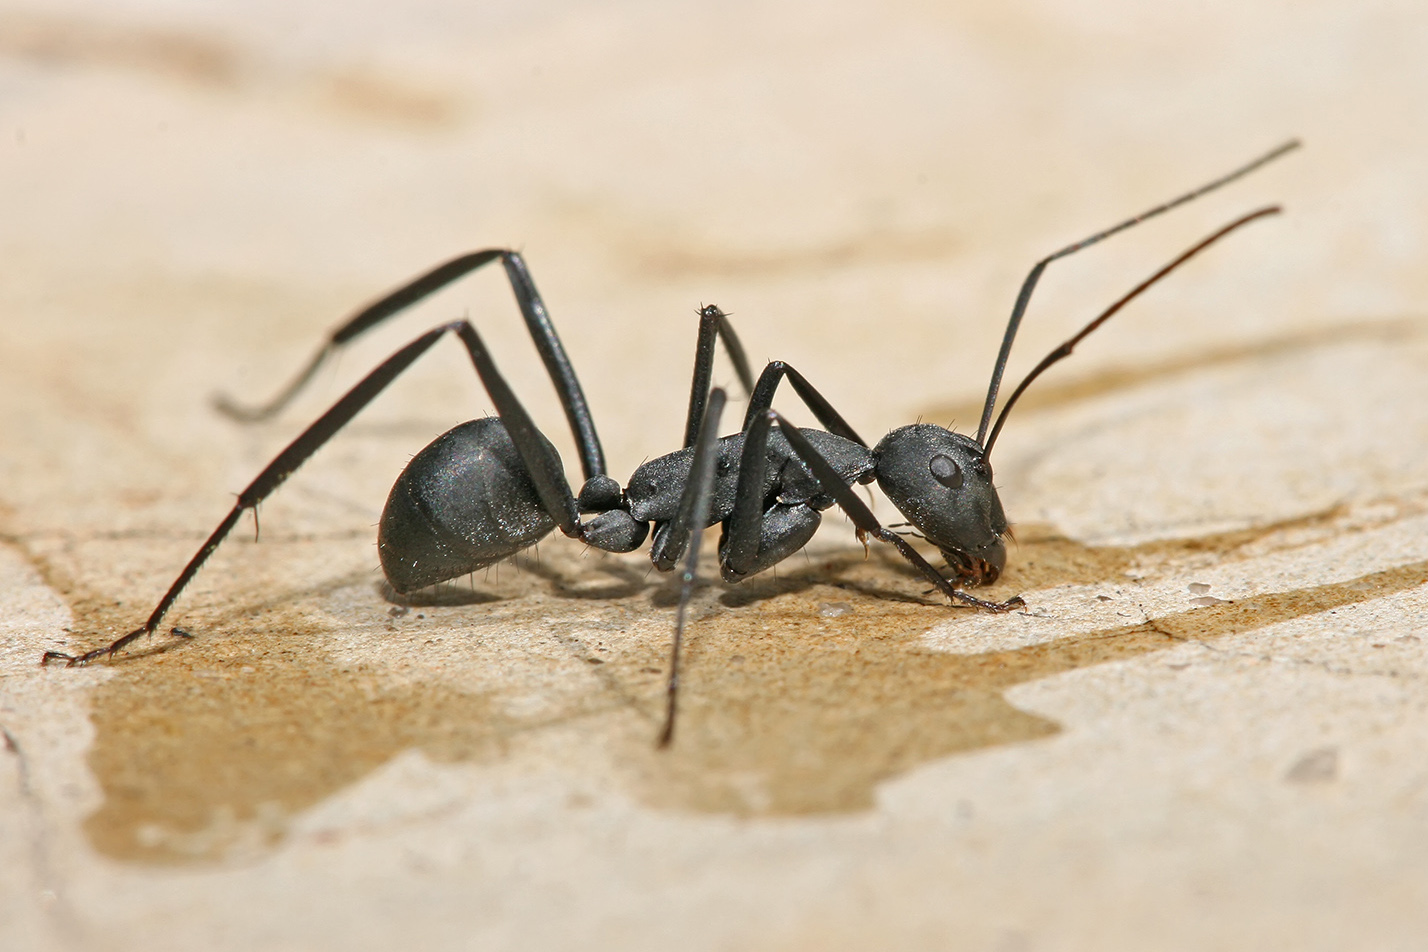 Details about Carpenter Ants